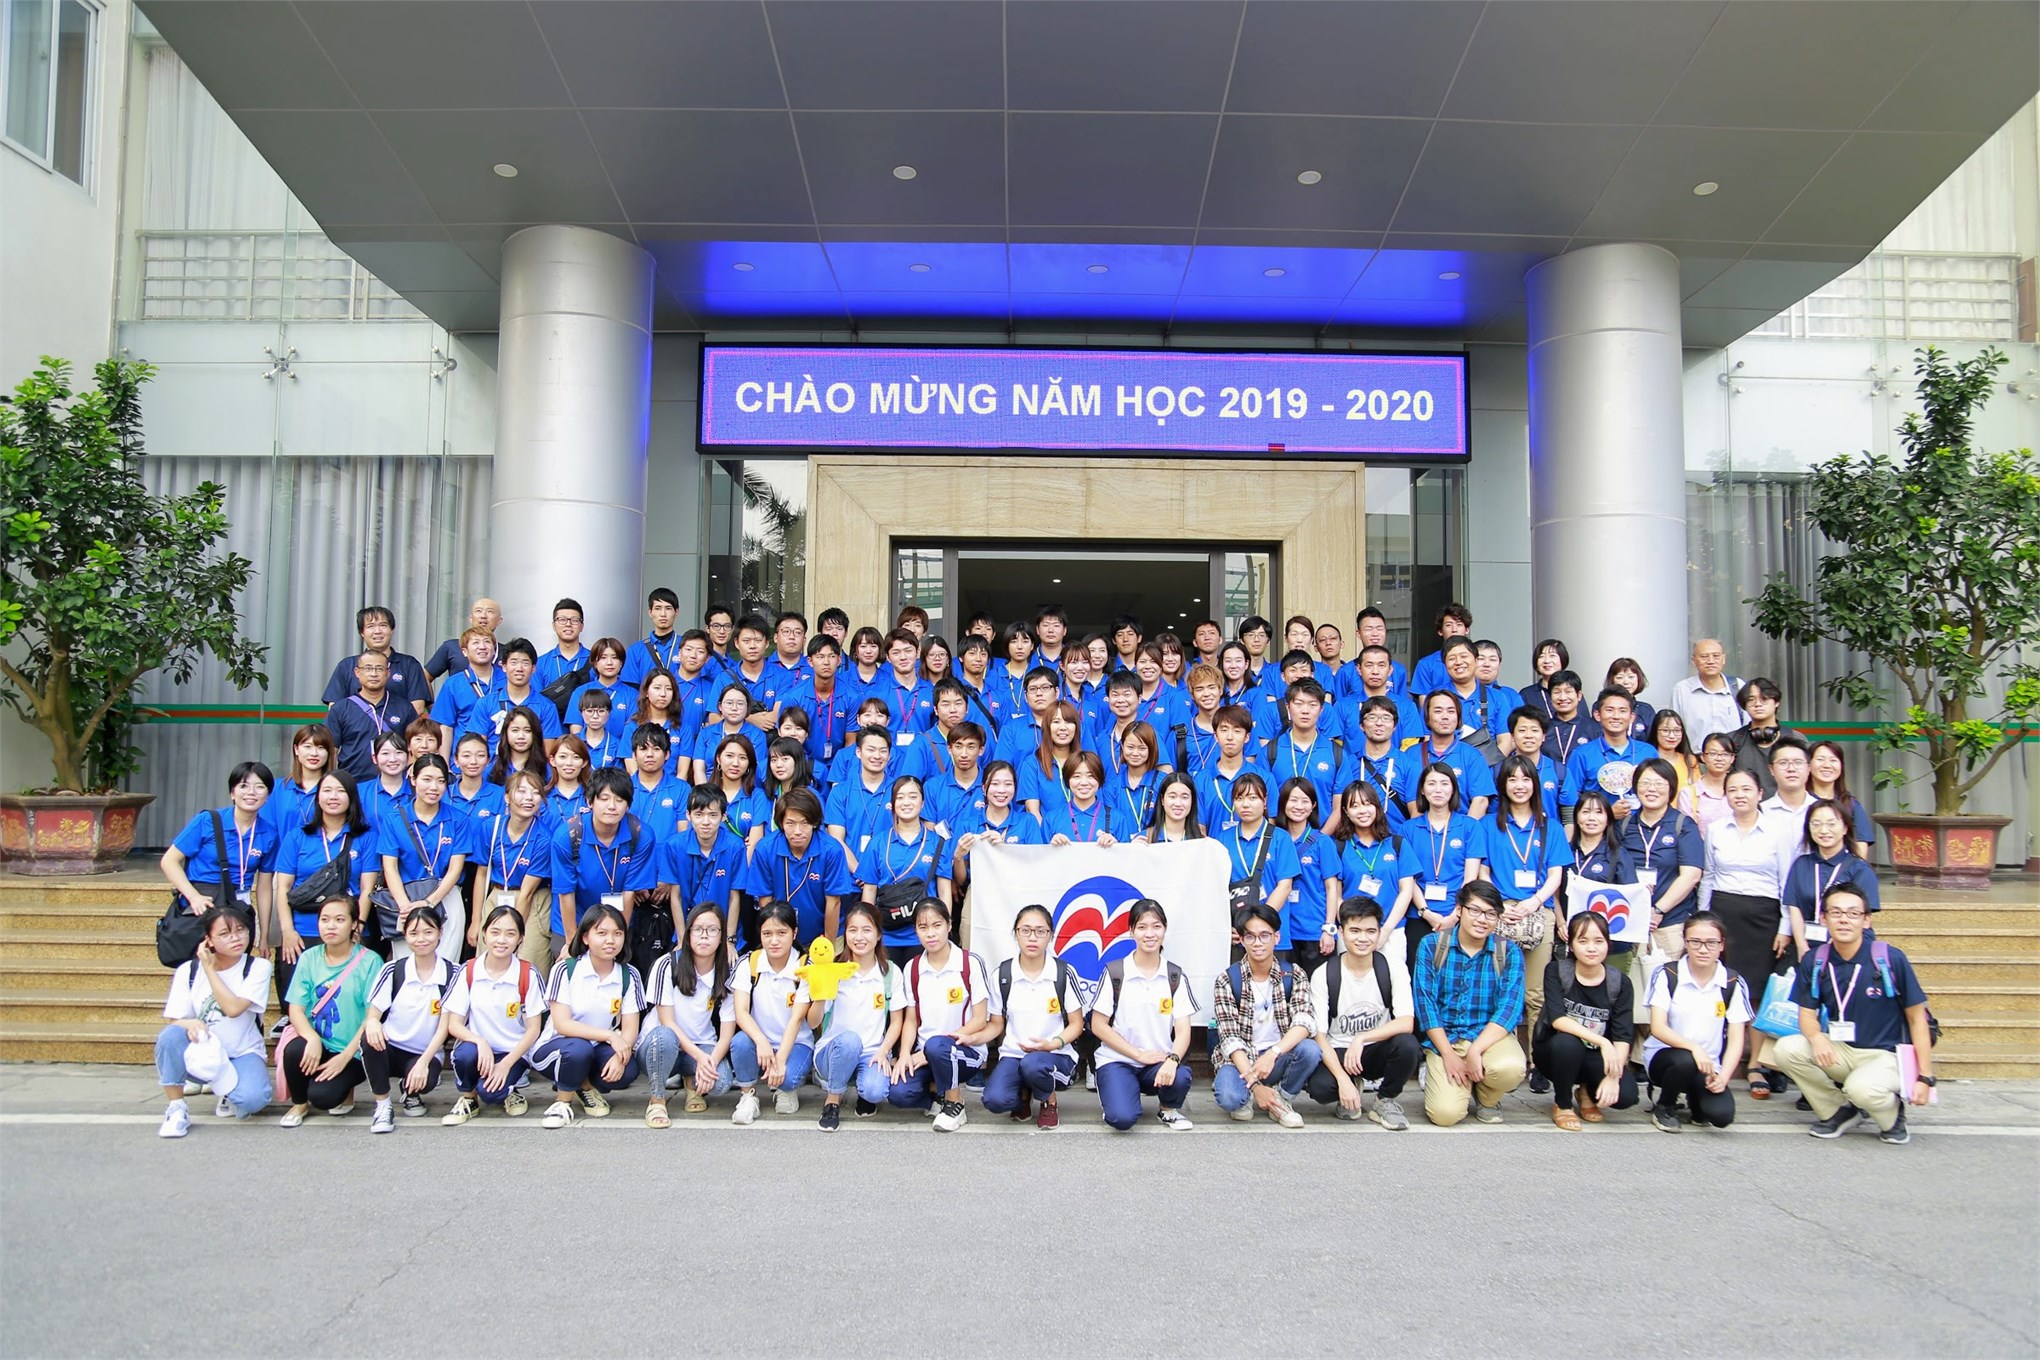 Đoàn cán bộ, giảng viên và sinh viên Trường Đại học Yojo chụp ảnh lưu niệm tại Đại học Công nghiệp Hà Nội